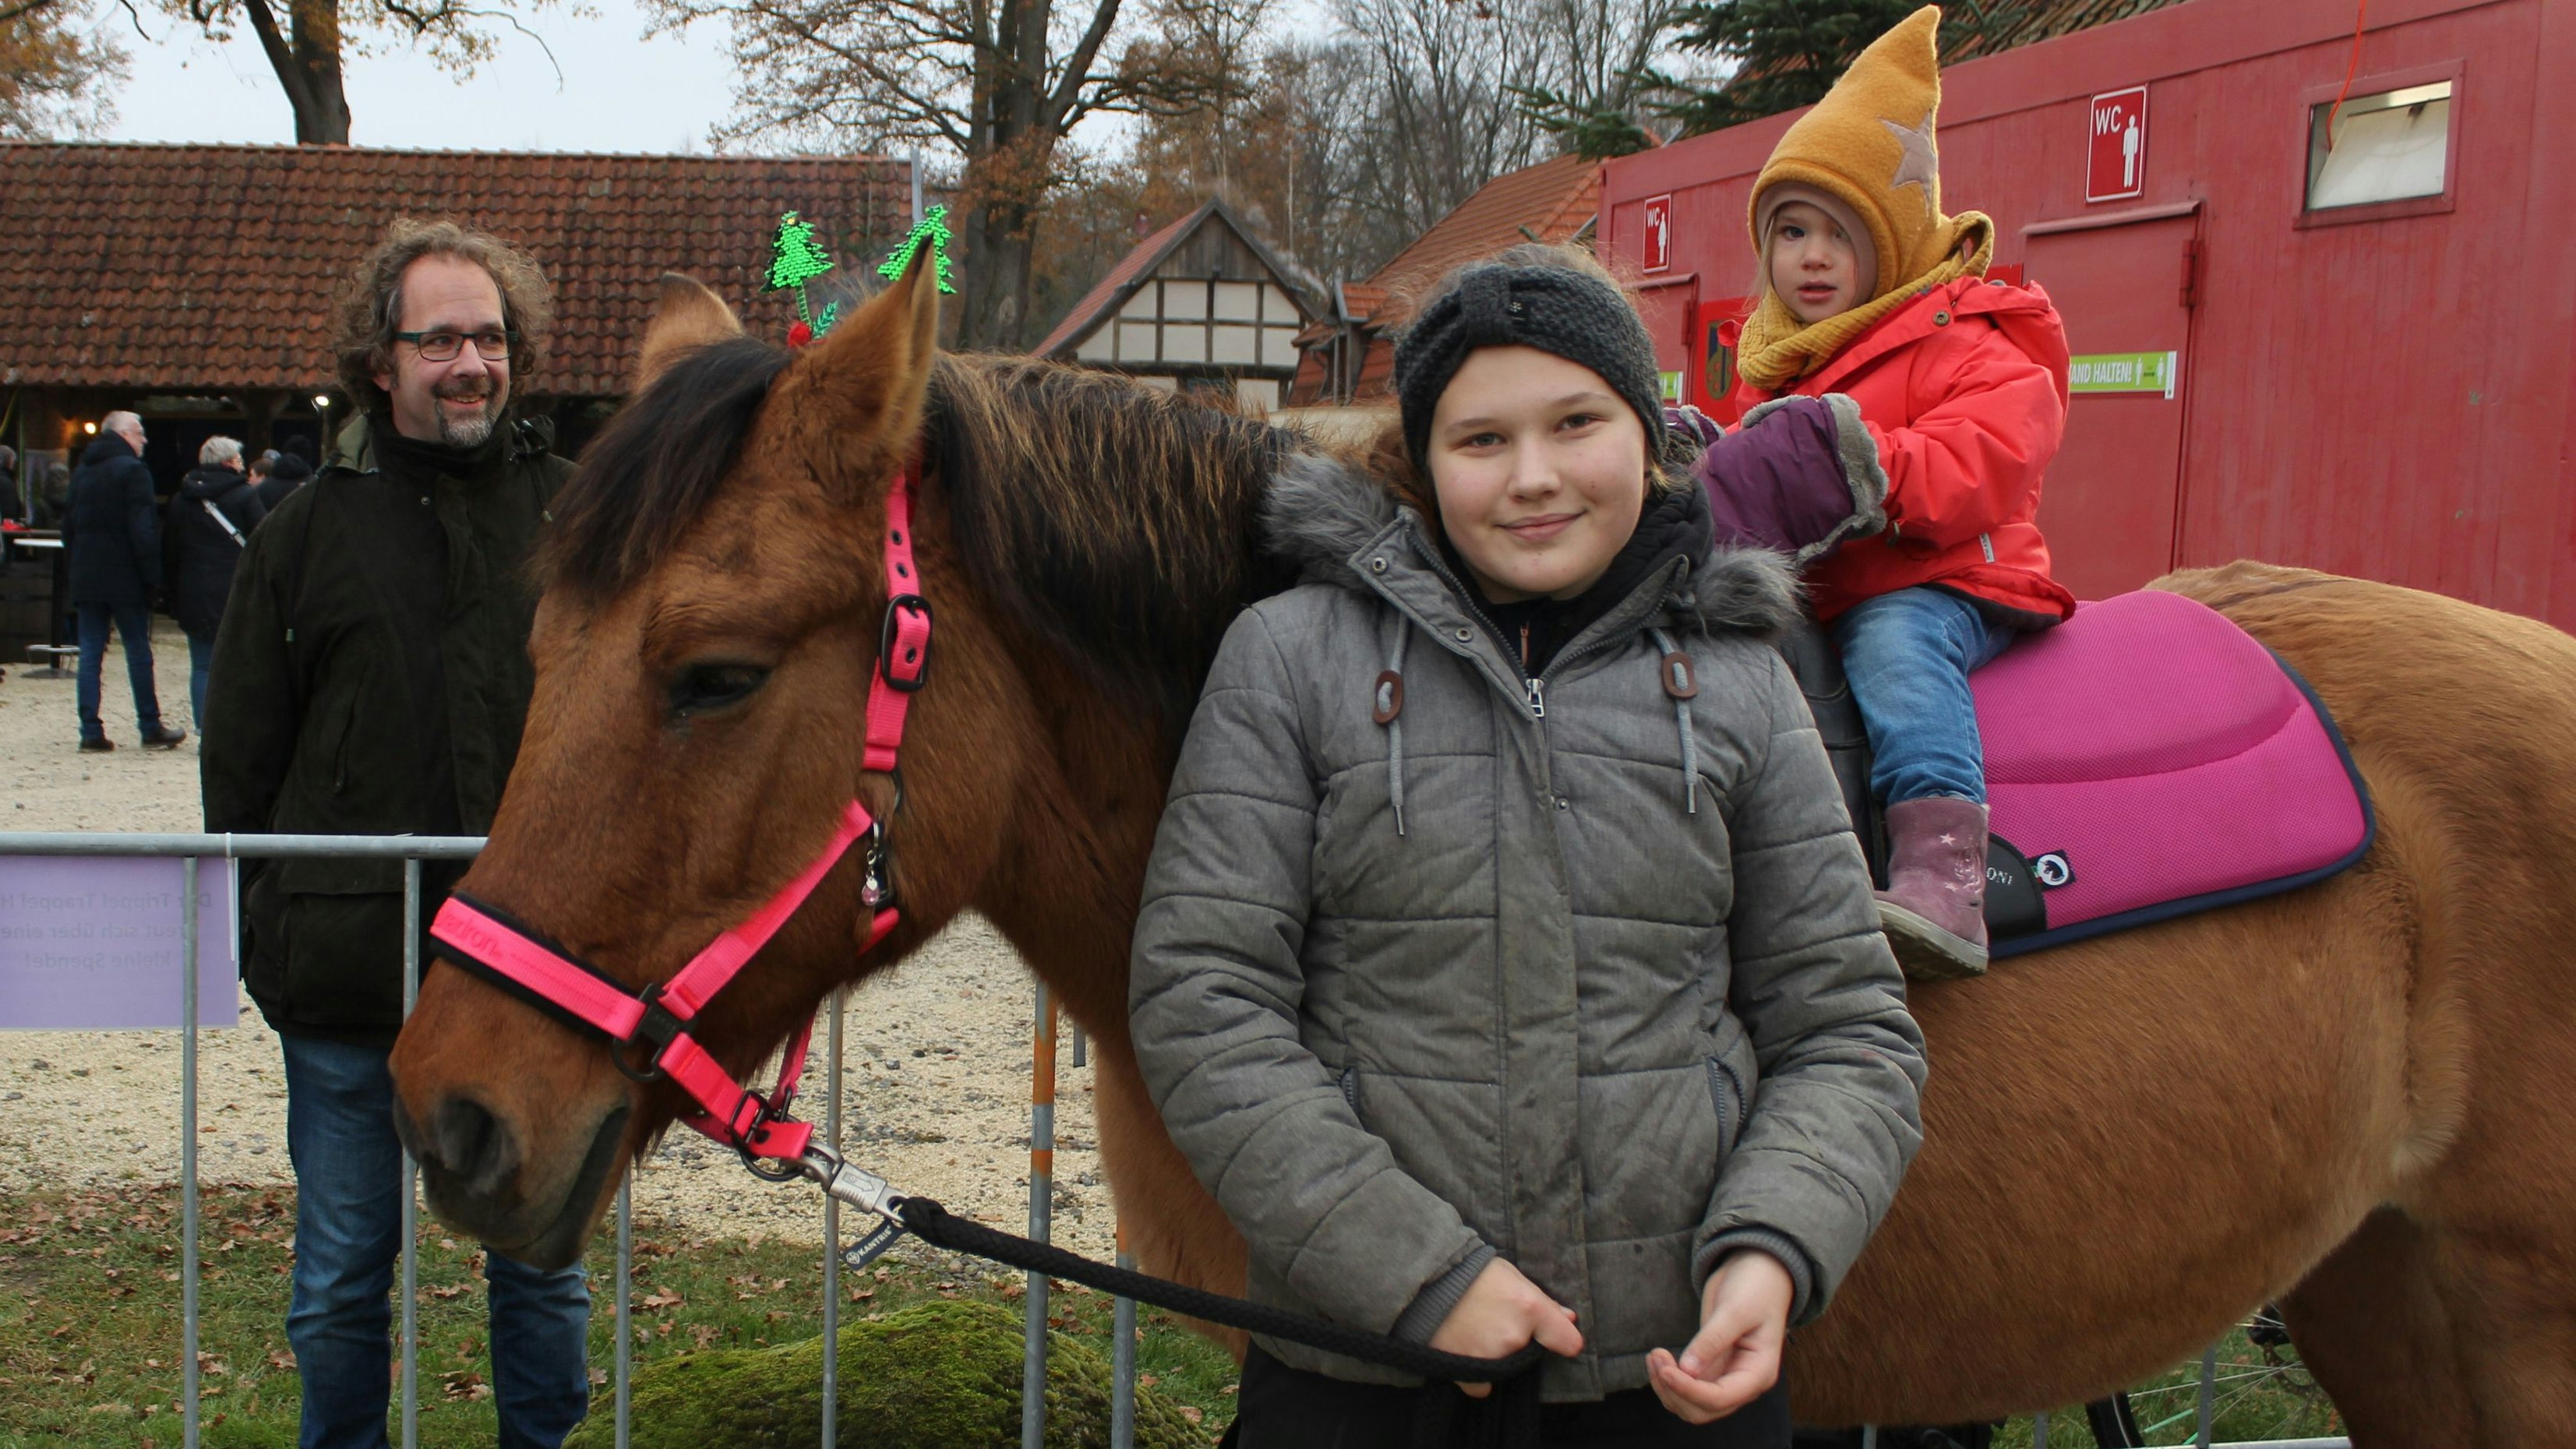 Vater Hans-Ulrich Otto (links) beobachtet stolz wie Tochter Thea (rechts) auf Stina reitet. Geführt wird das Pferd von Leonie Kohl vom Trippel Trappel Hof. Foto: Heinzel